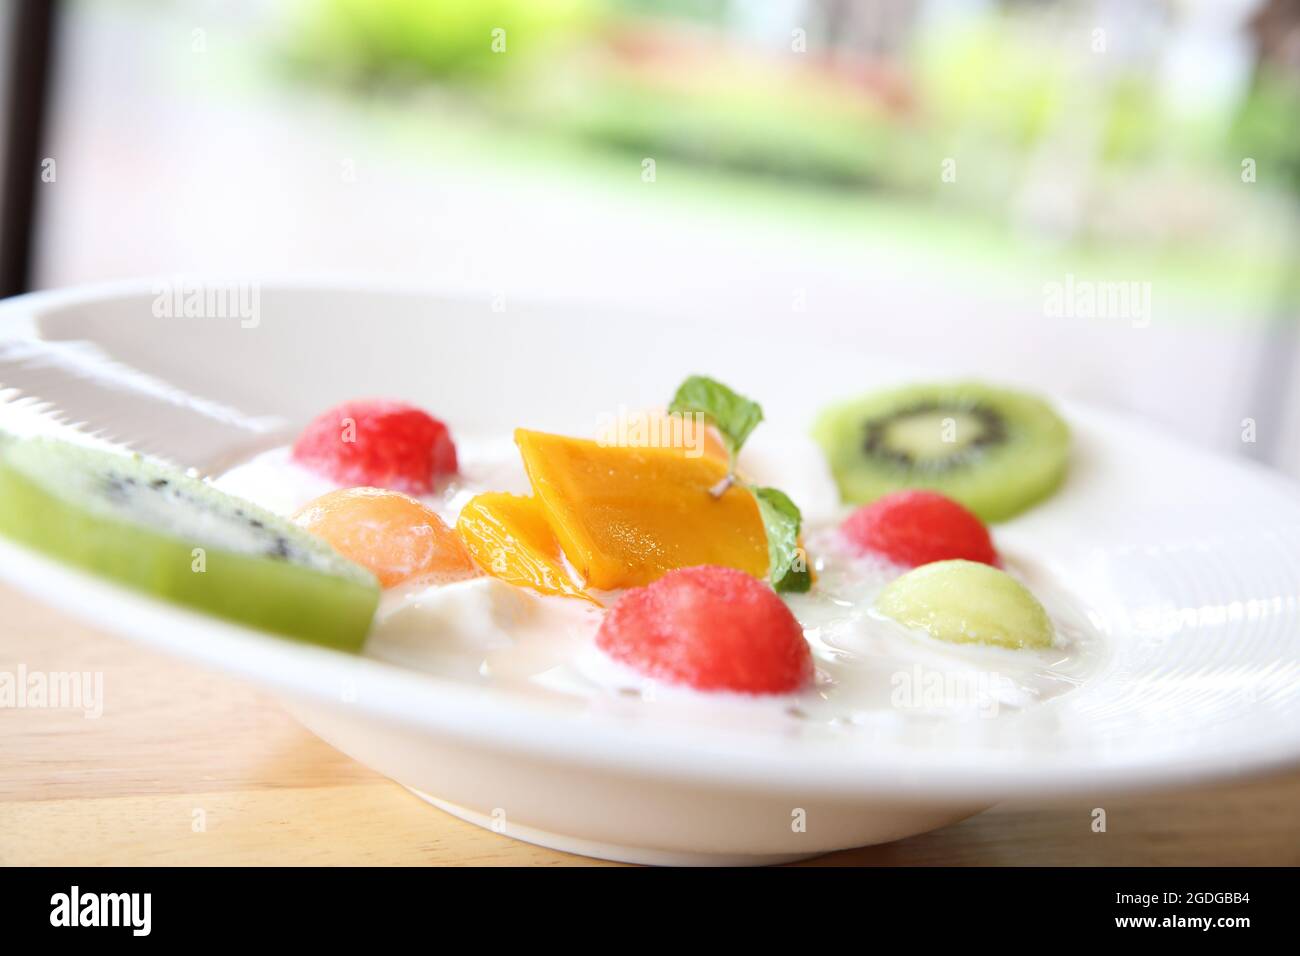 Fruit pudding on wood background Stock Photo